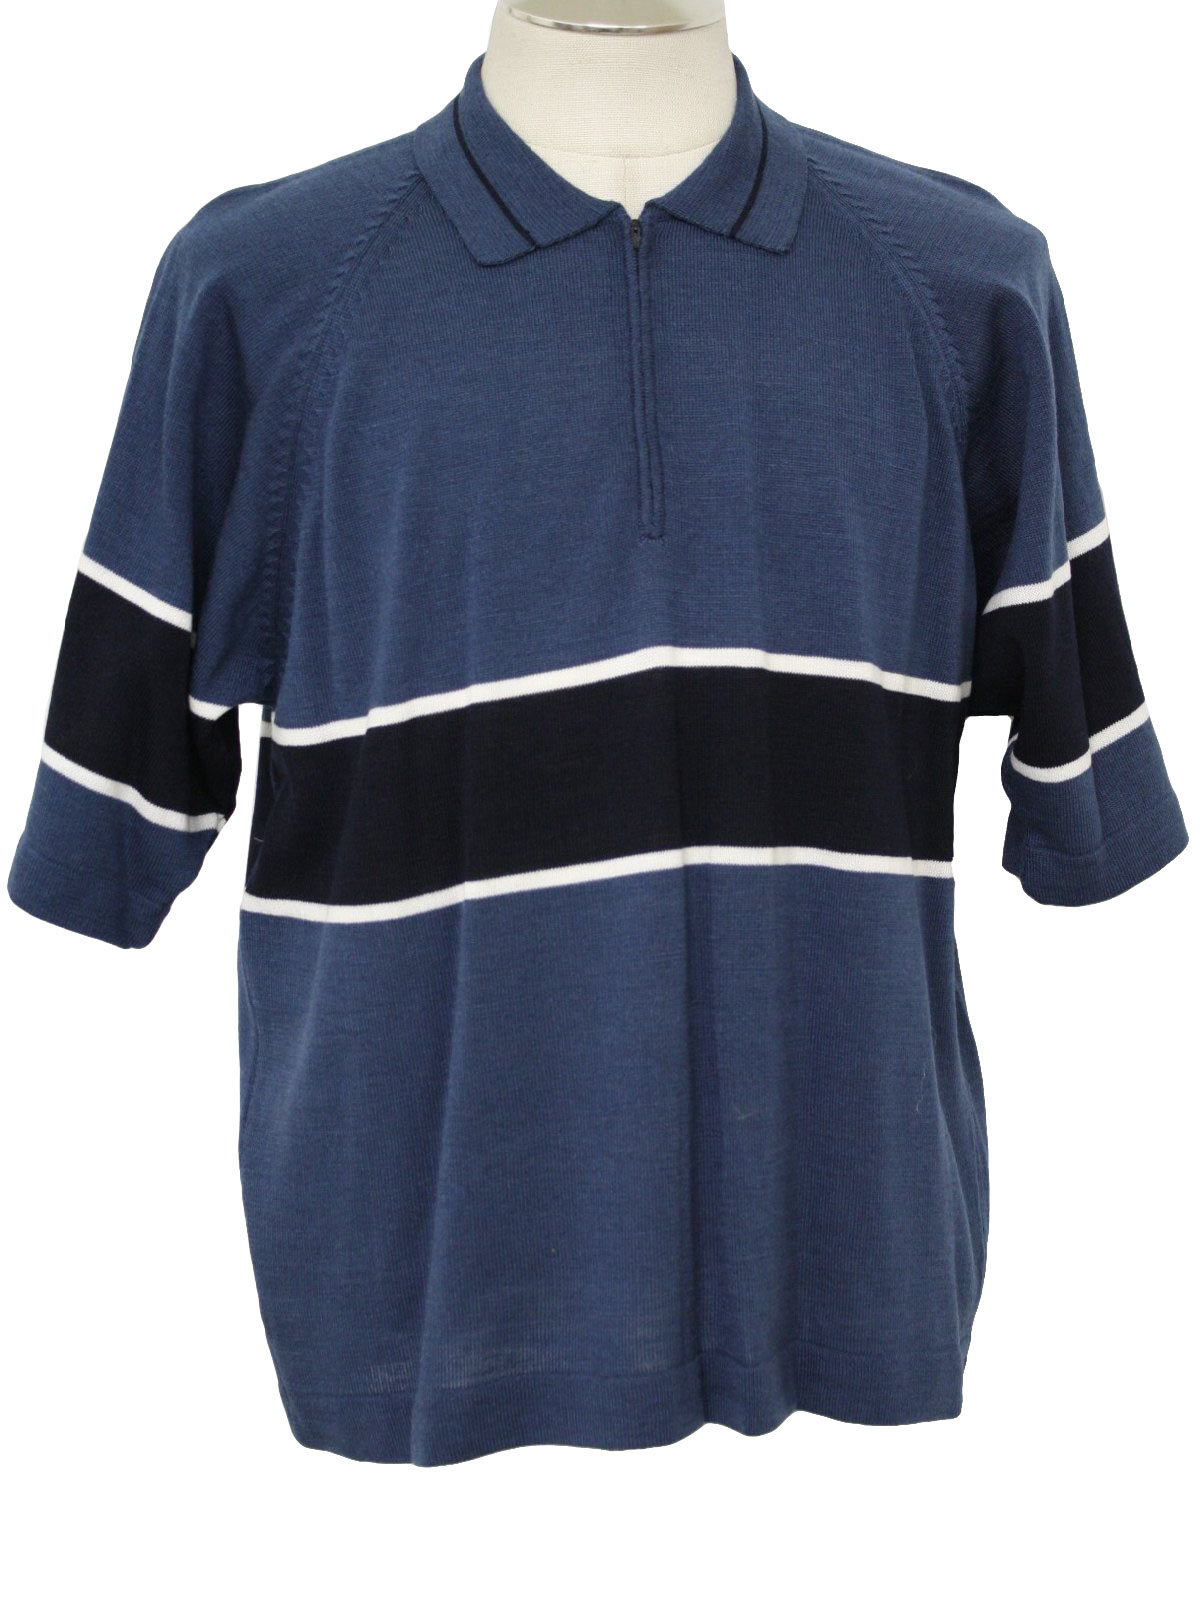 Retro 70s Knit Shirt (Kennington) : 70s style (made in 90s) -Kennington ...